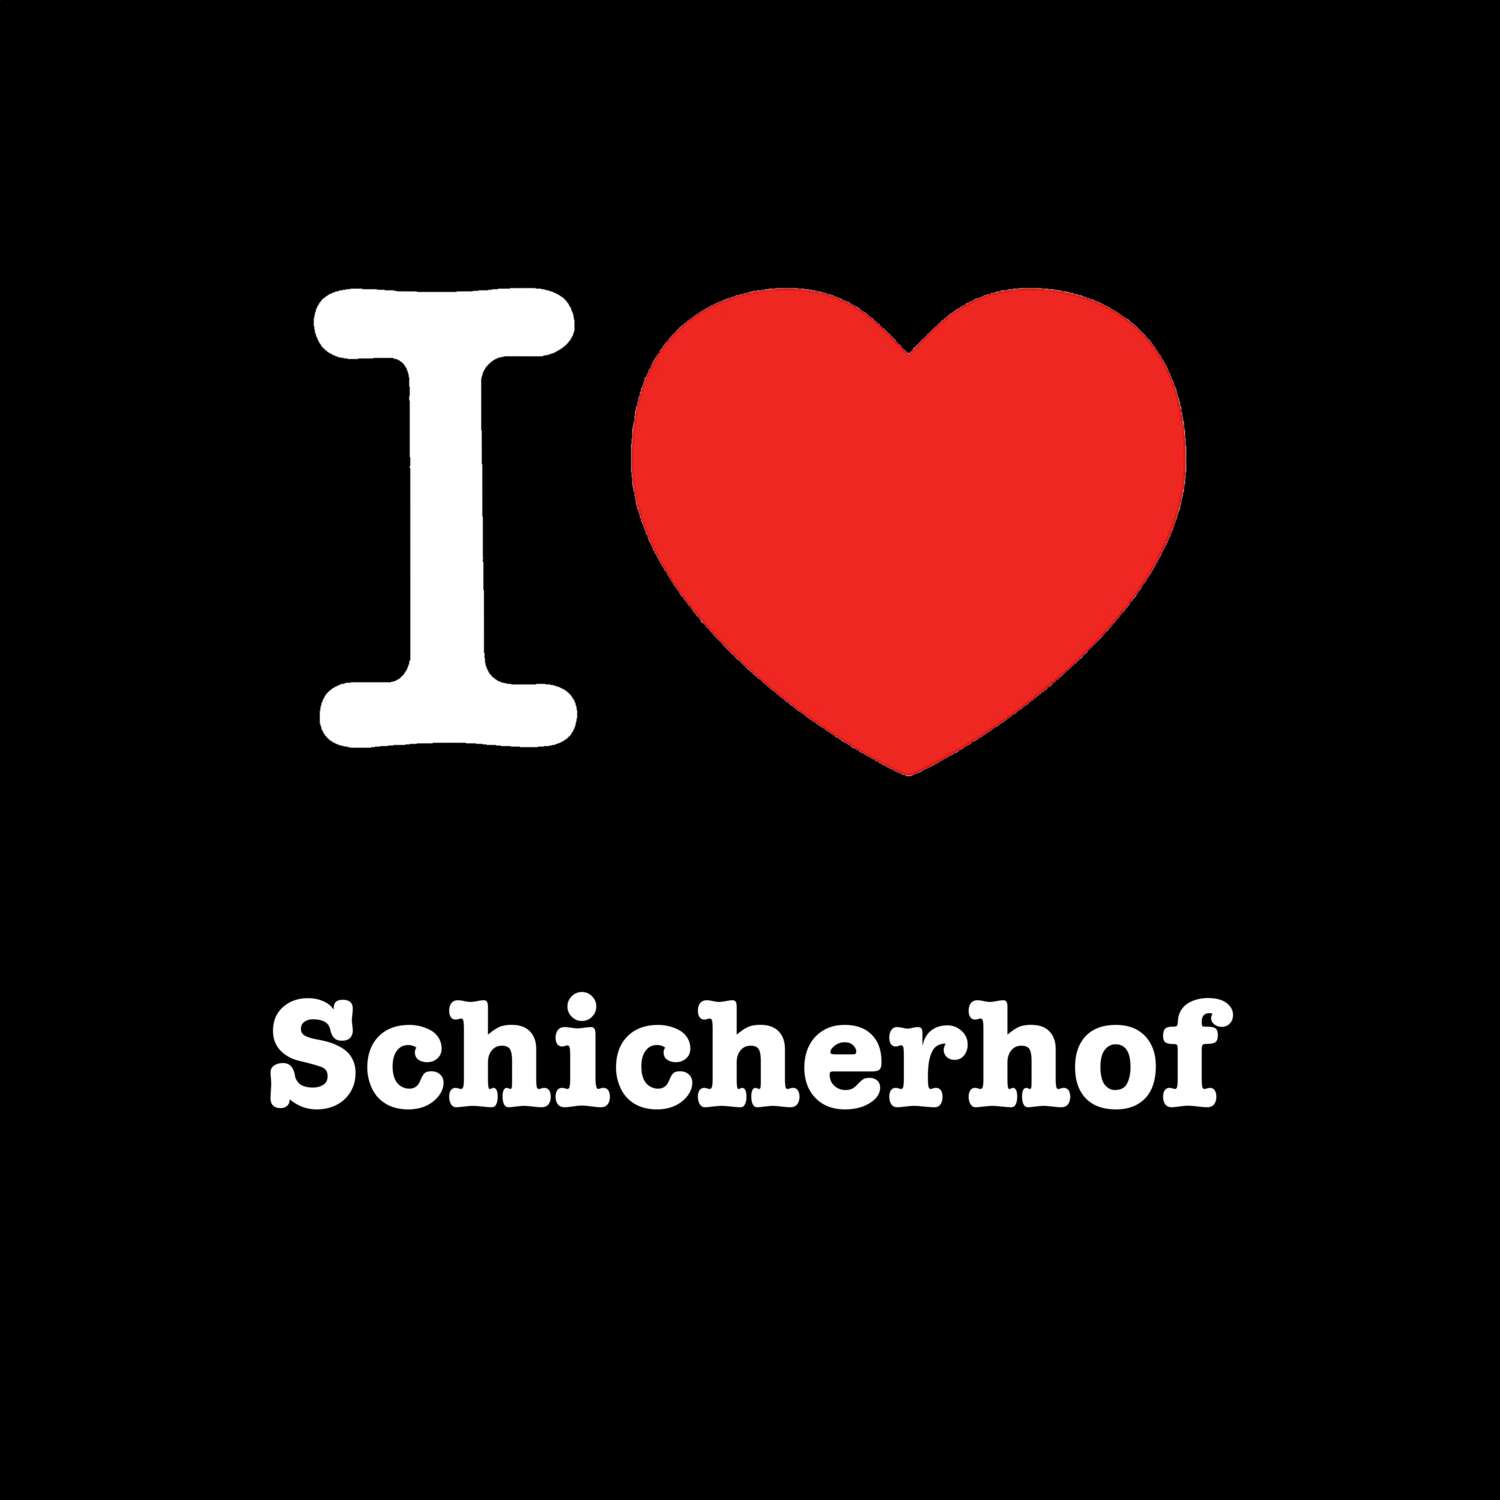 Schicherhof T-Shirt »I love«